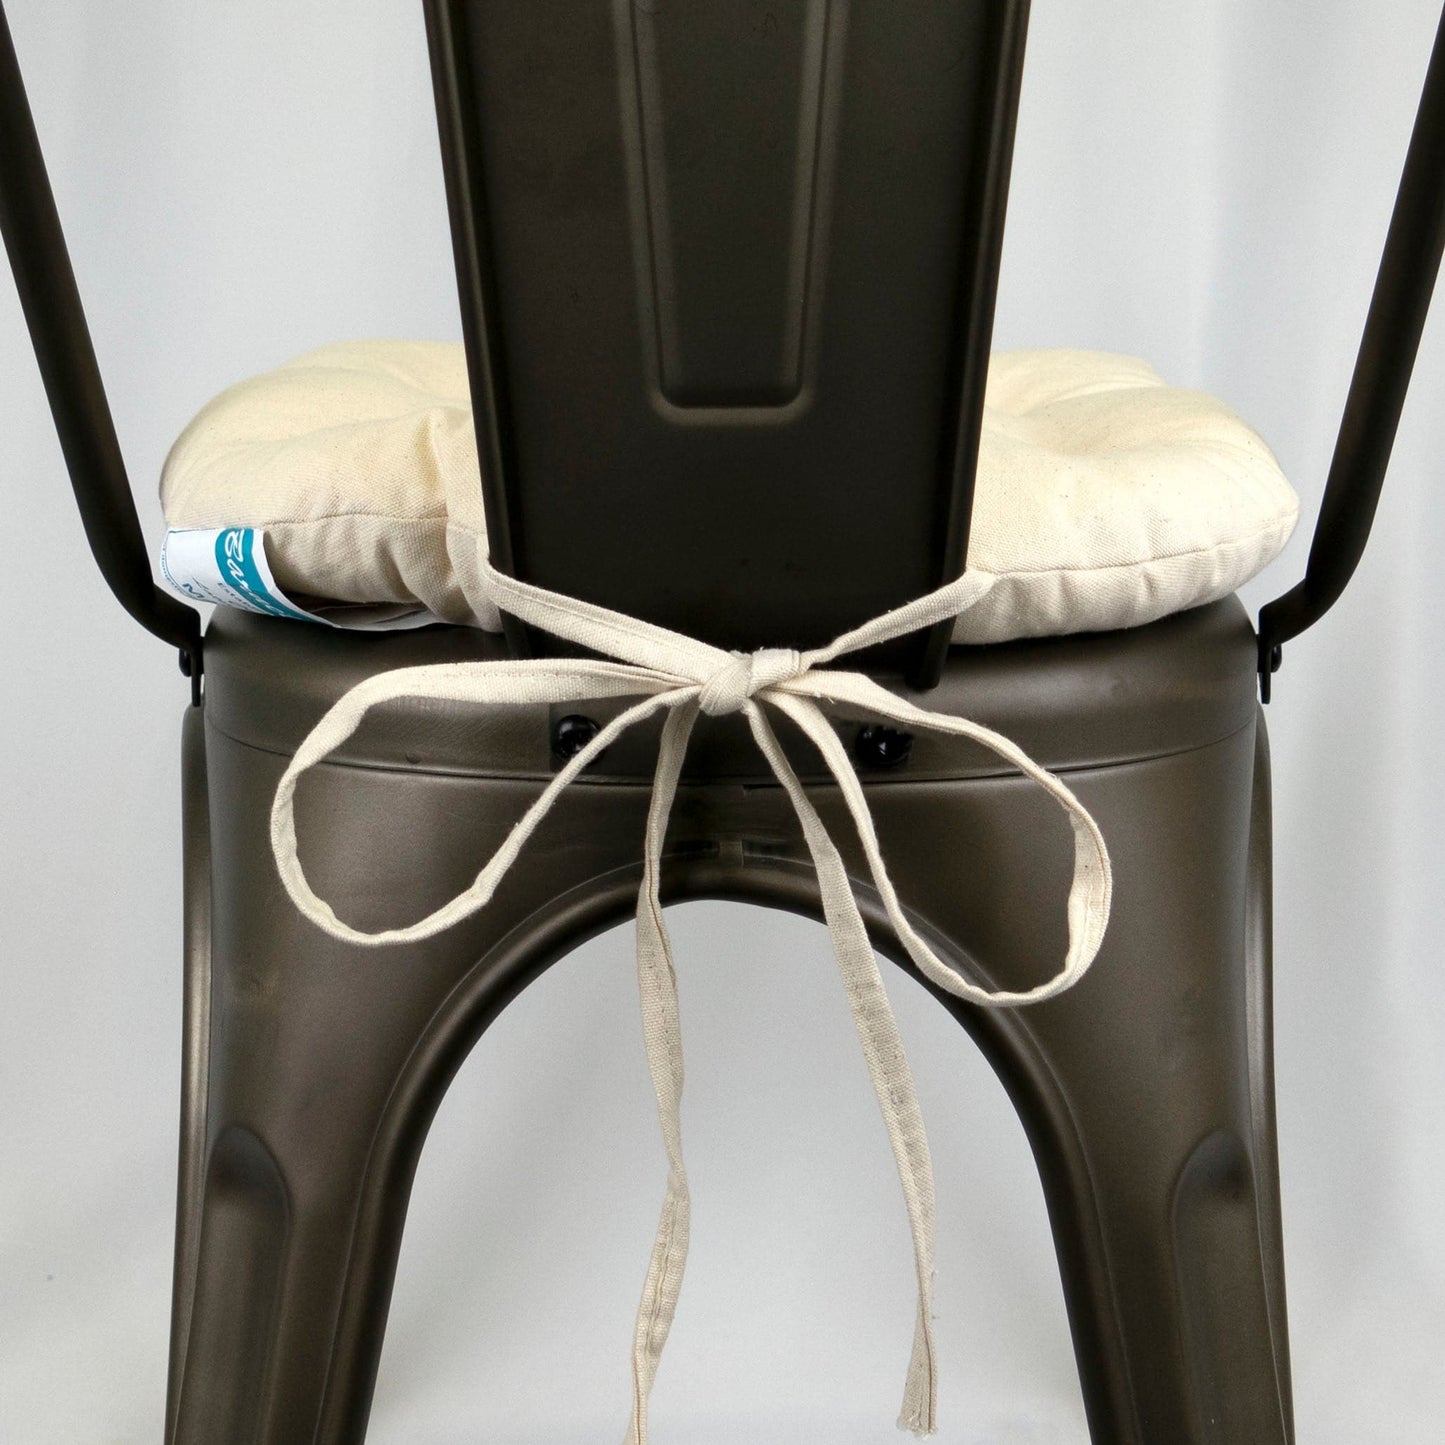 Cotton Duck Natural Industrial Chair Cushion - Latex Foam Fill - Barnett Home Decor - Neutral White 